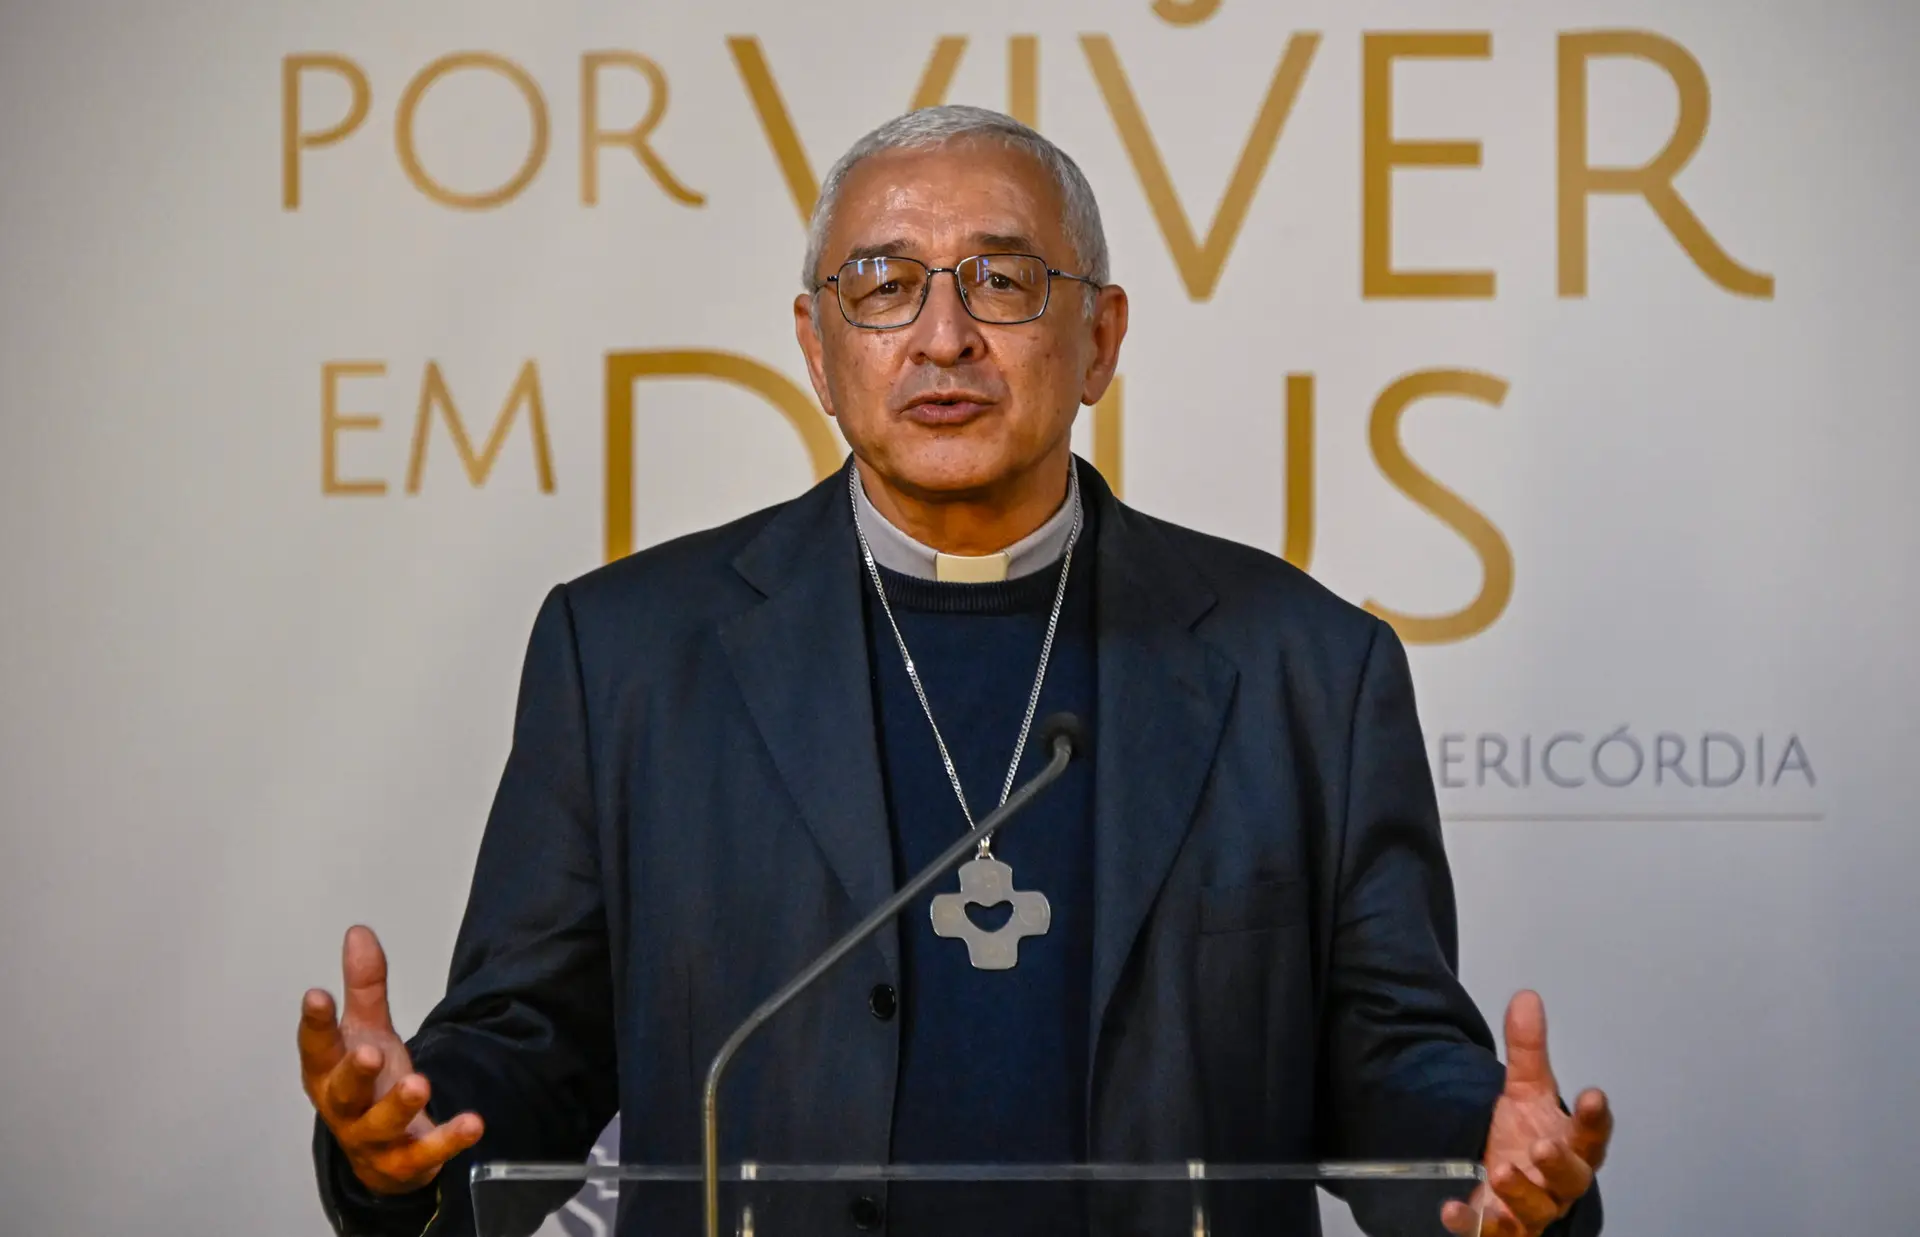 Conferência Episcopal Portuguesa desconhece nova investigação ao bispo José Ornelas